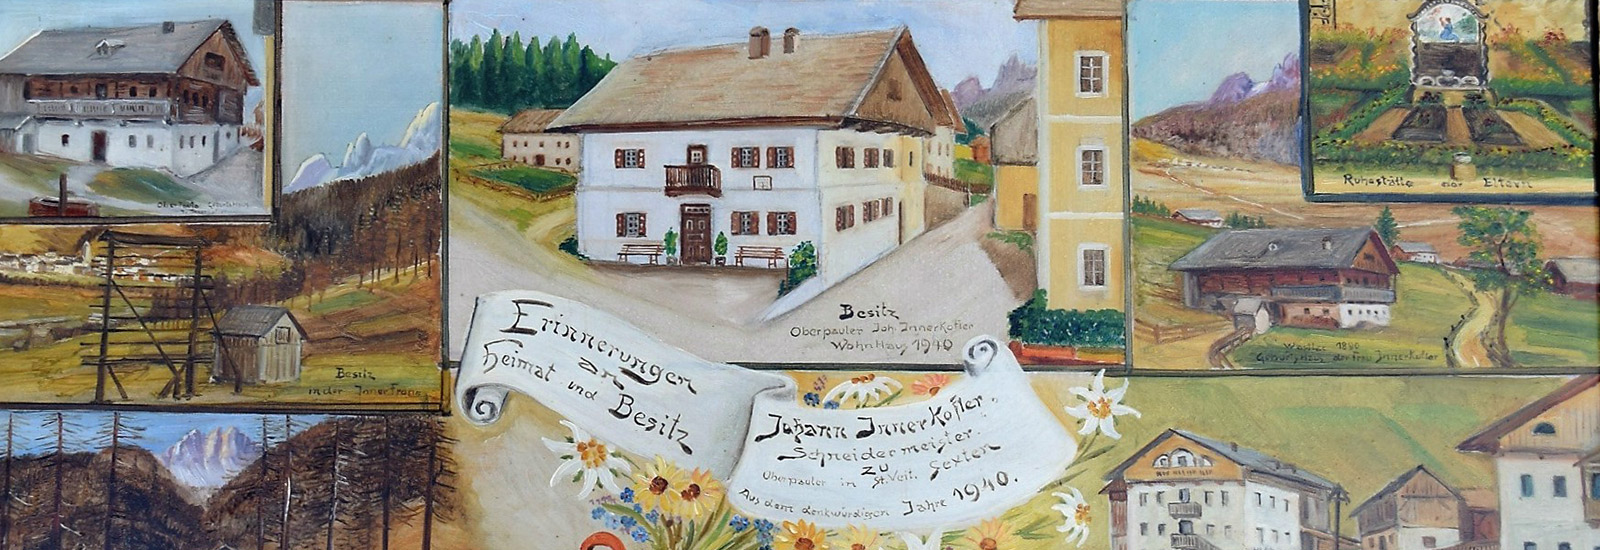 Geschichte Haus Oberpauler